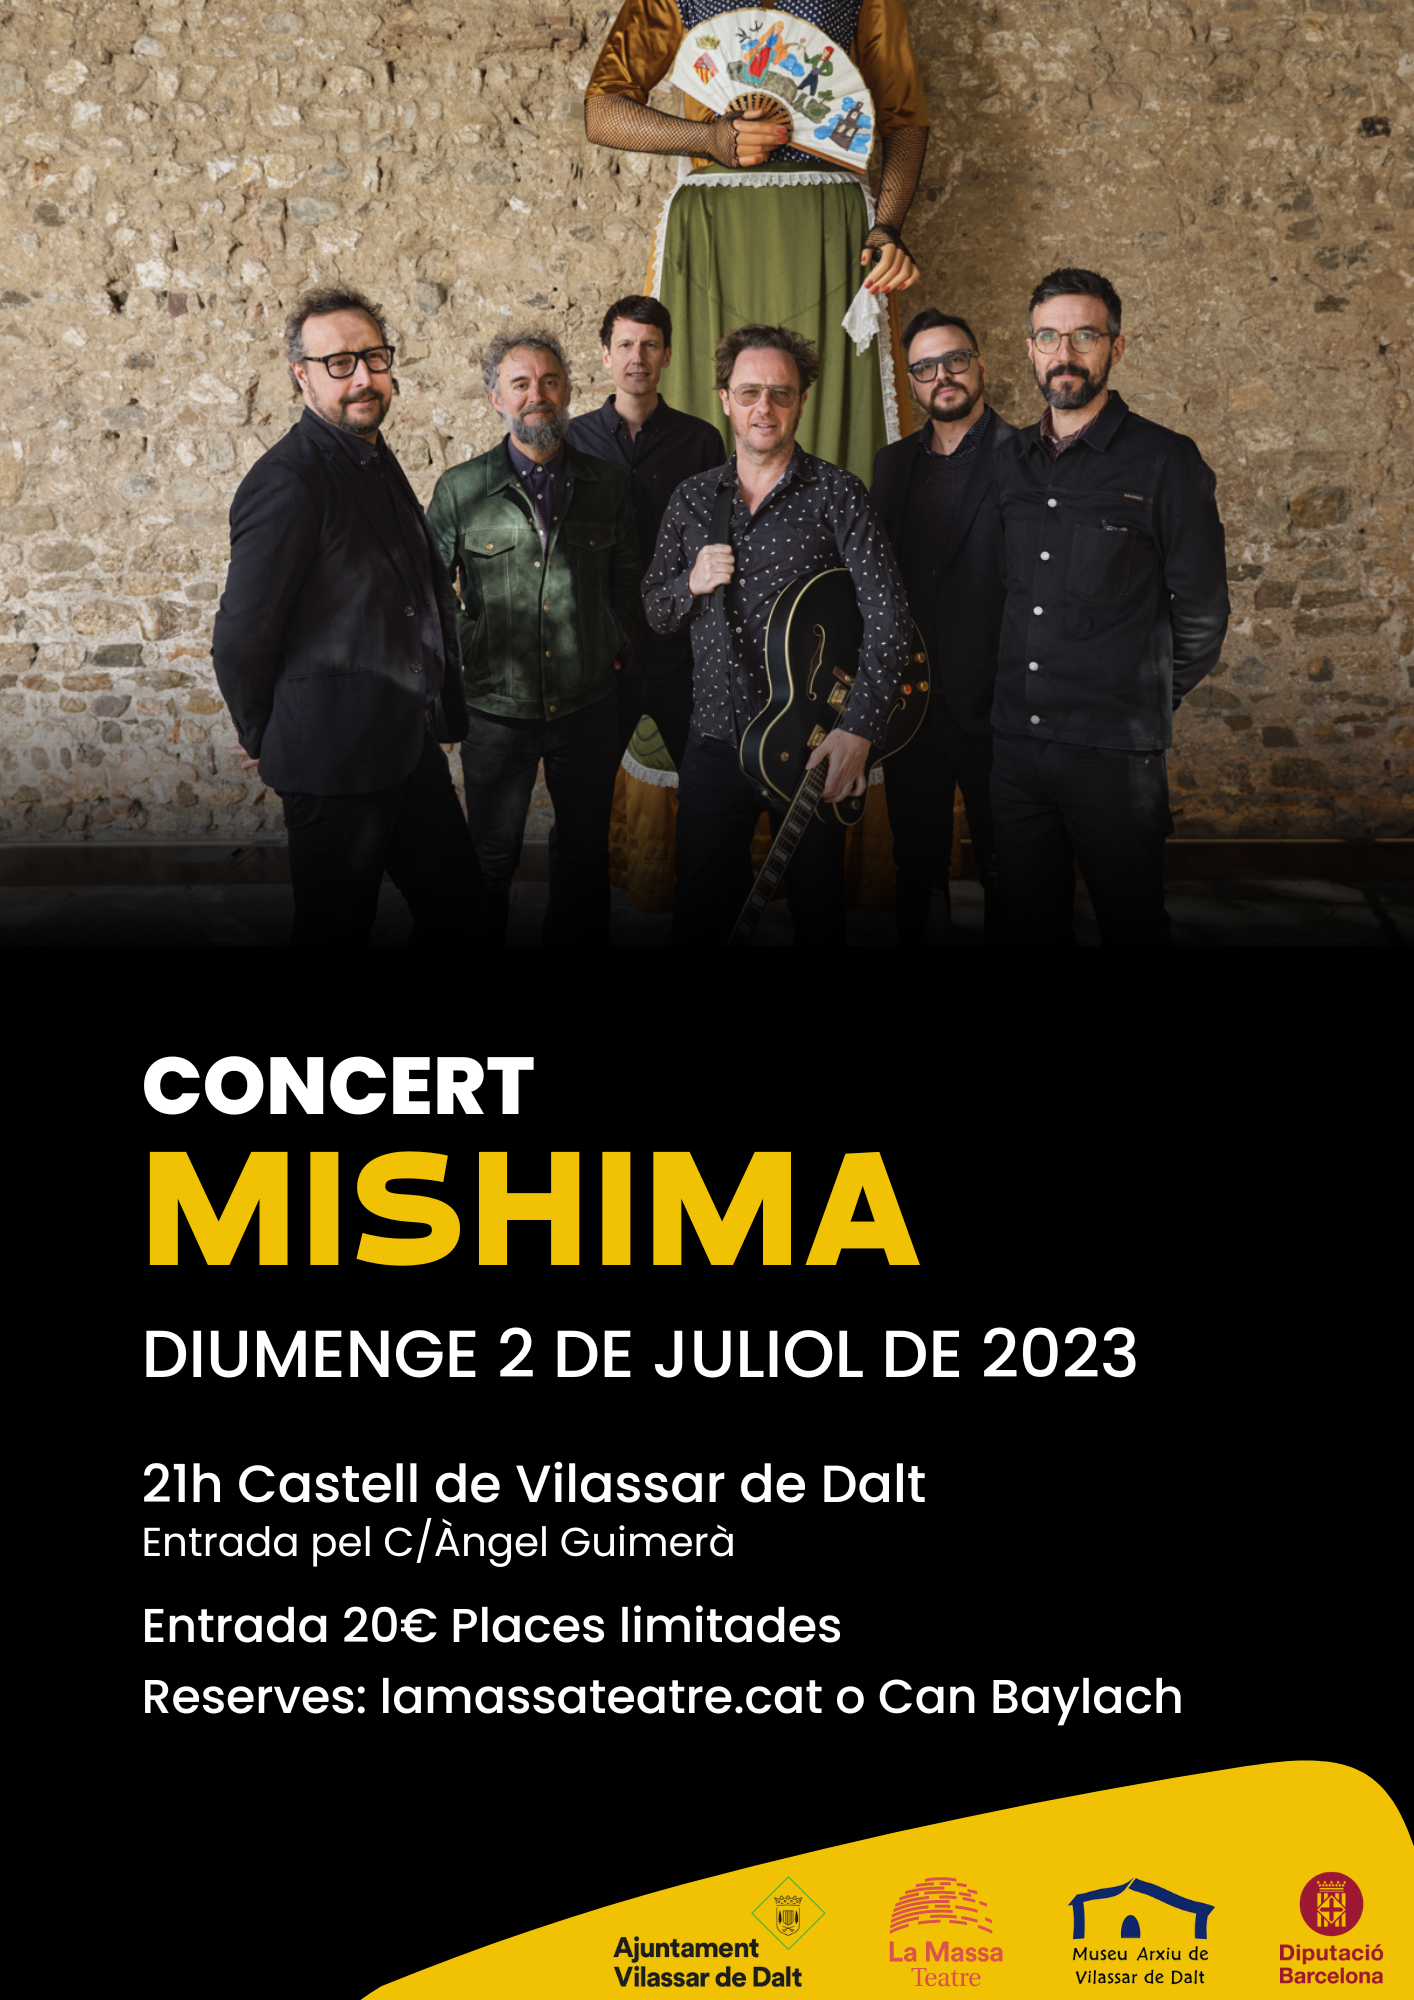 Mishima en concert al Castell de Vilassar